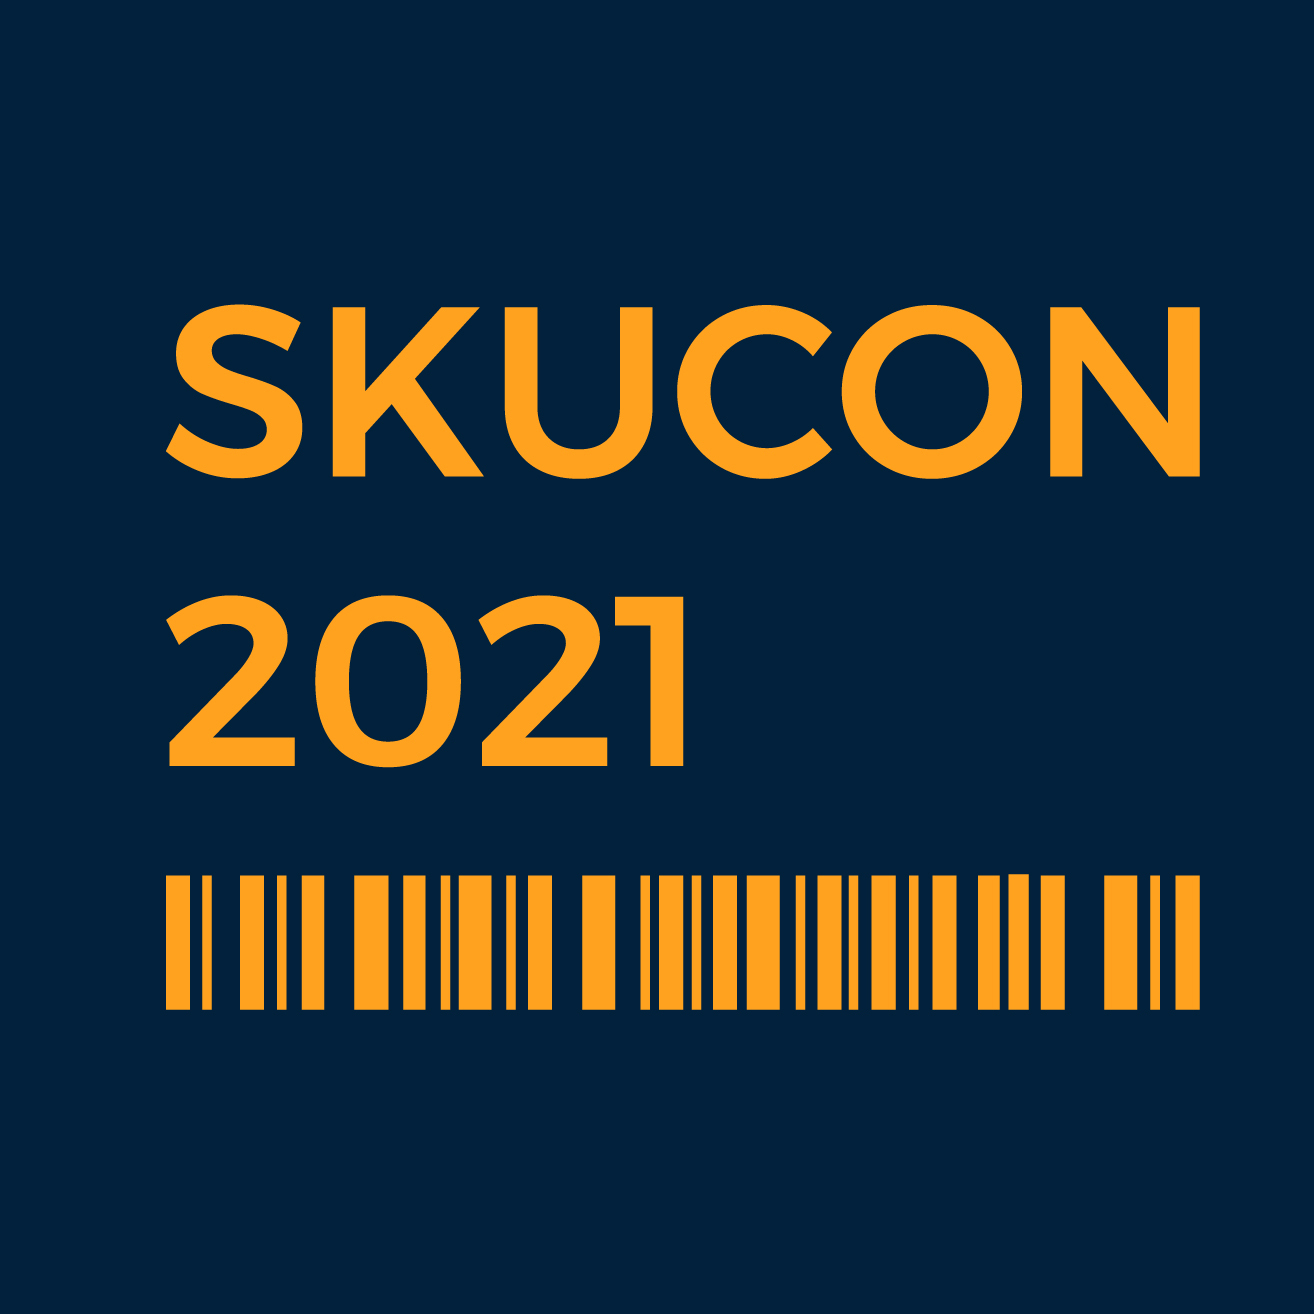 skucon 2021 Video Content Portal